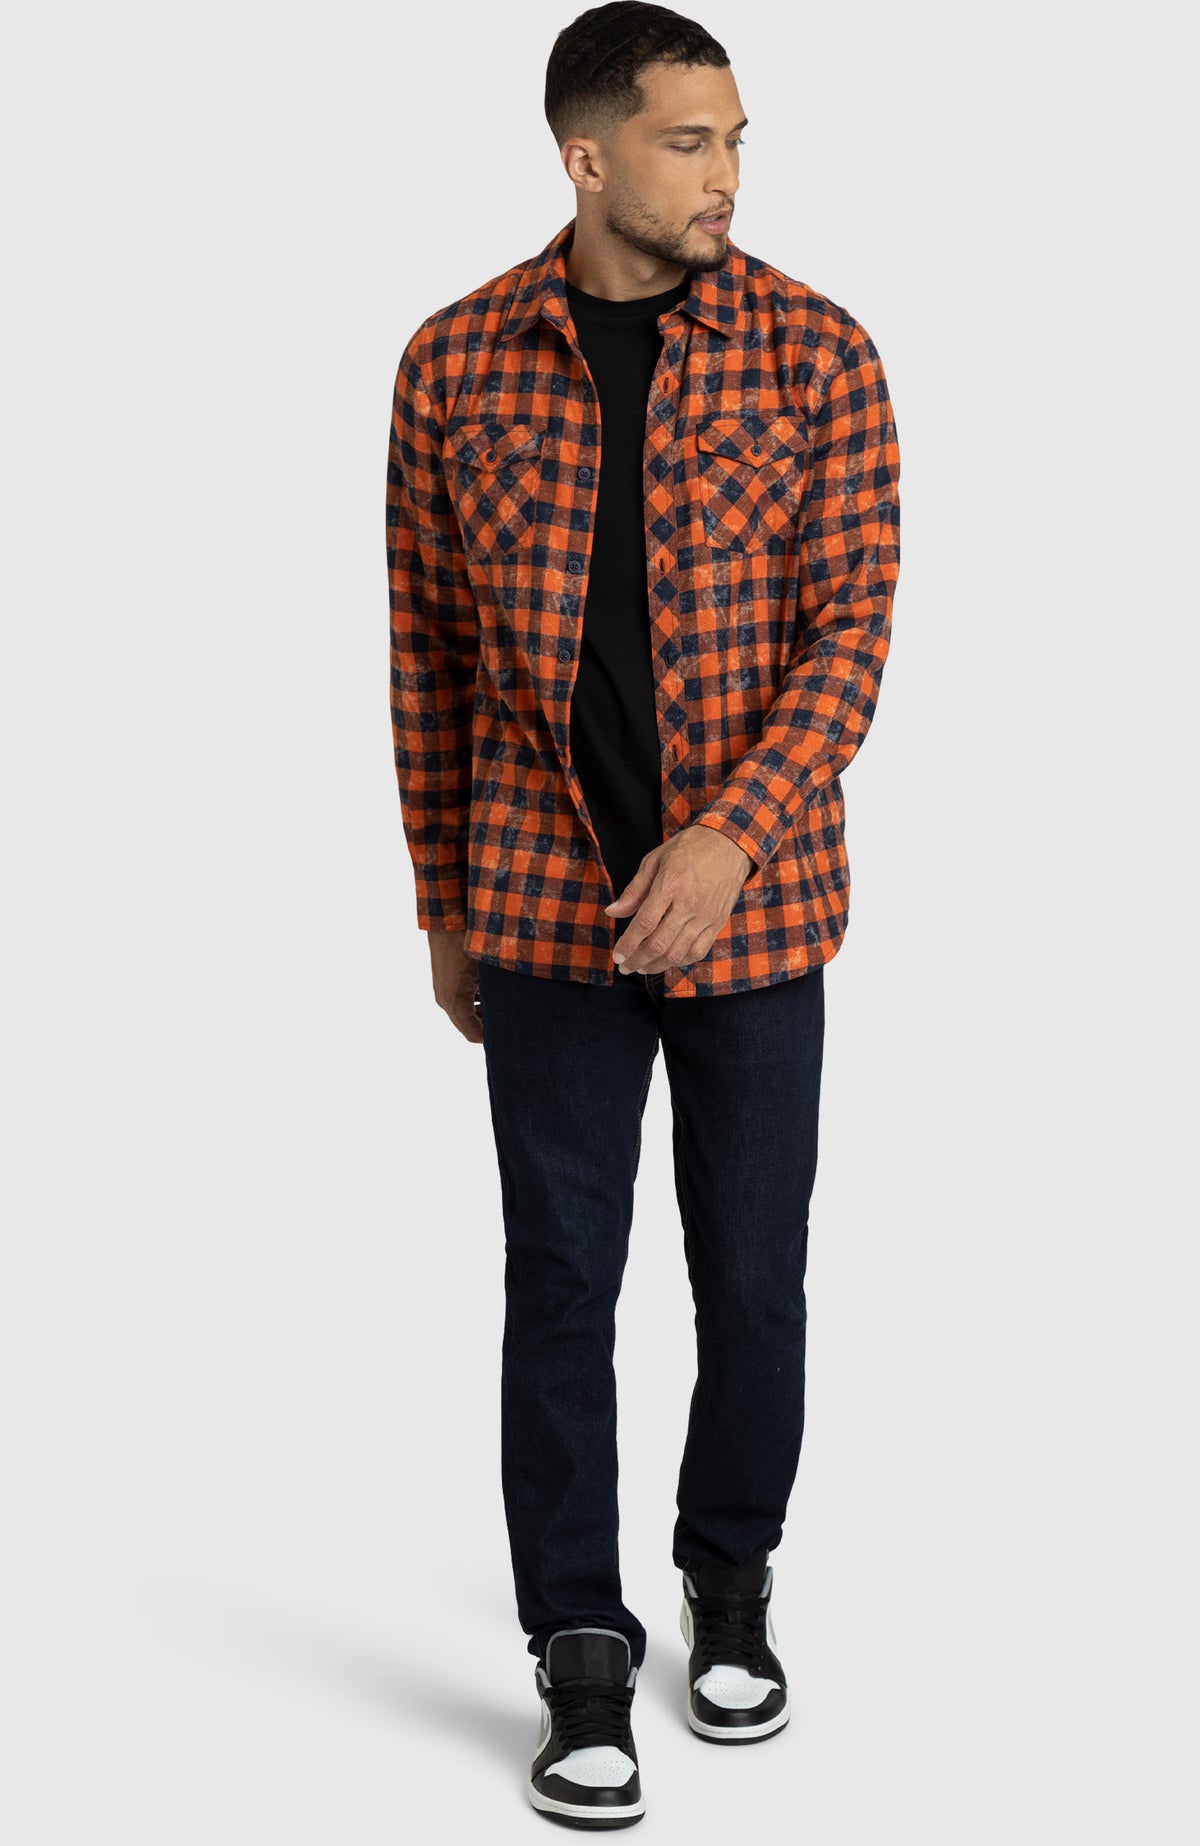 Spiced Orange Plaid Flannel Shirt for Men - Full Length